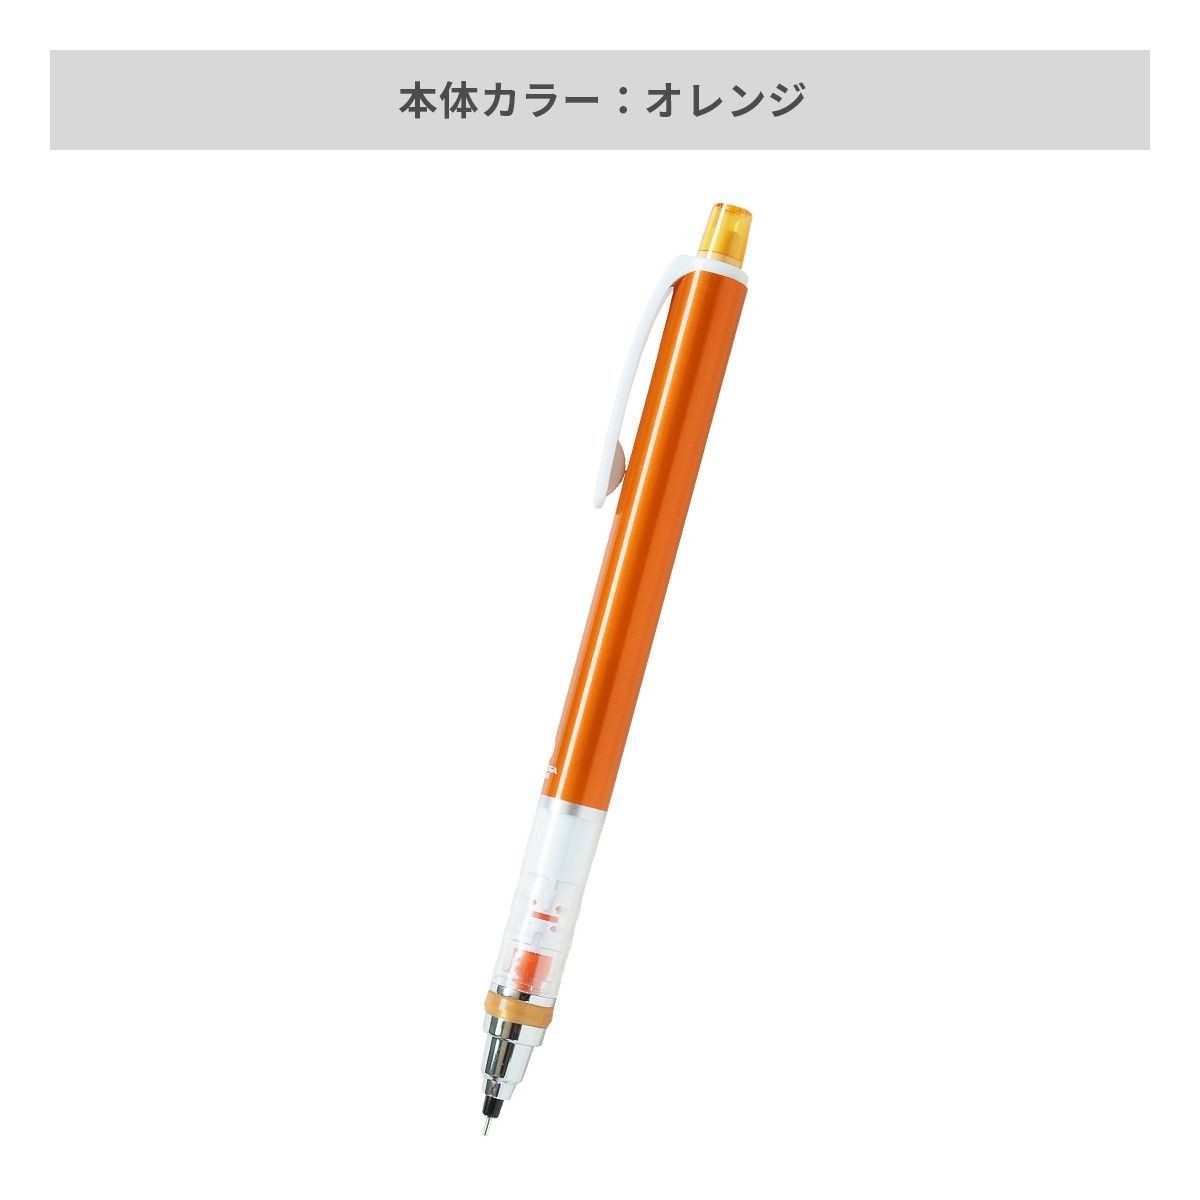 三菱鉛筆 クルトガ スタンダード 0.5mm【名入れボールペン / パッド印刷】 画像4